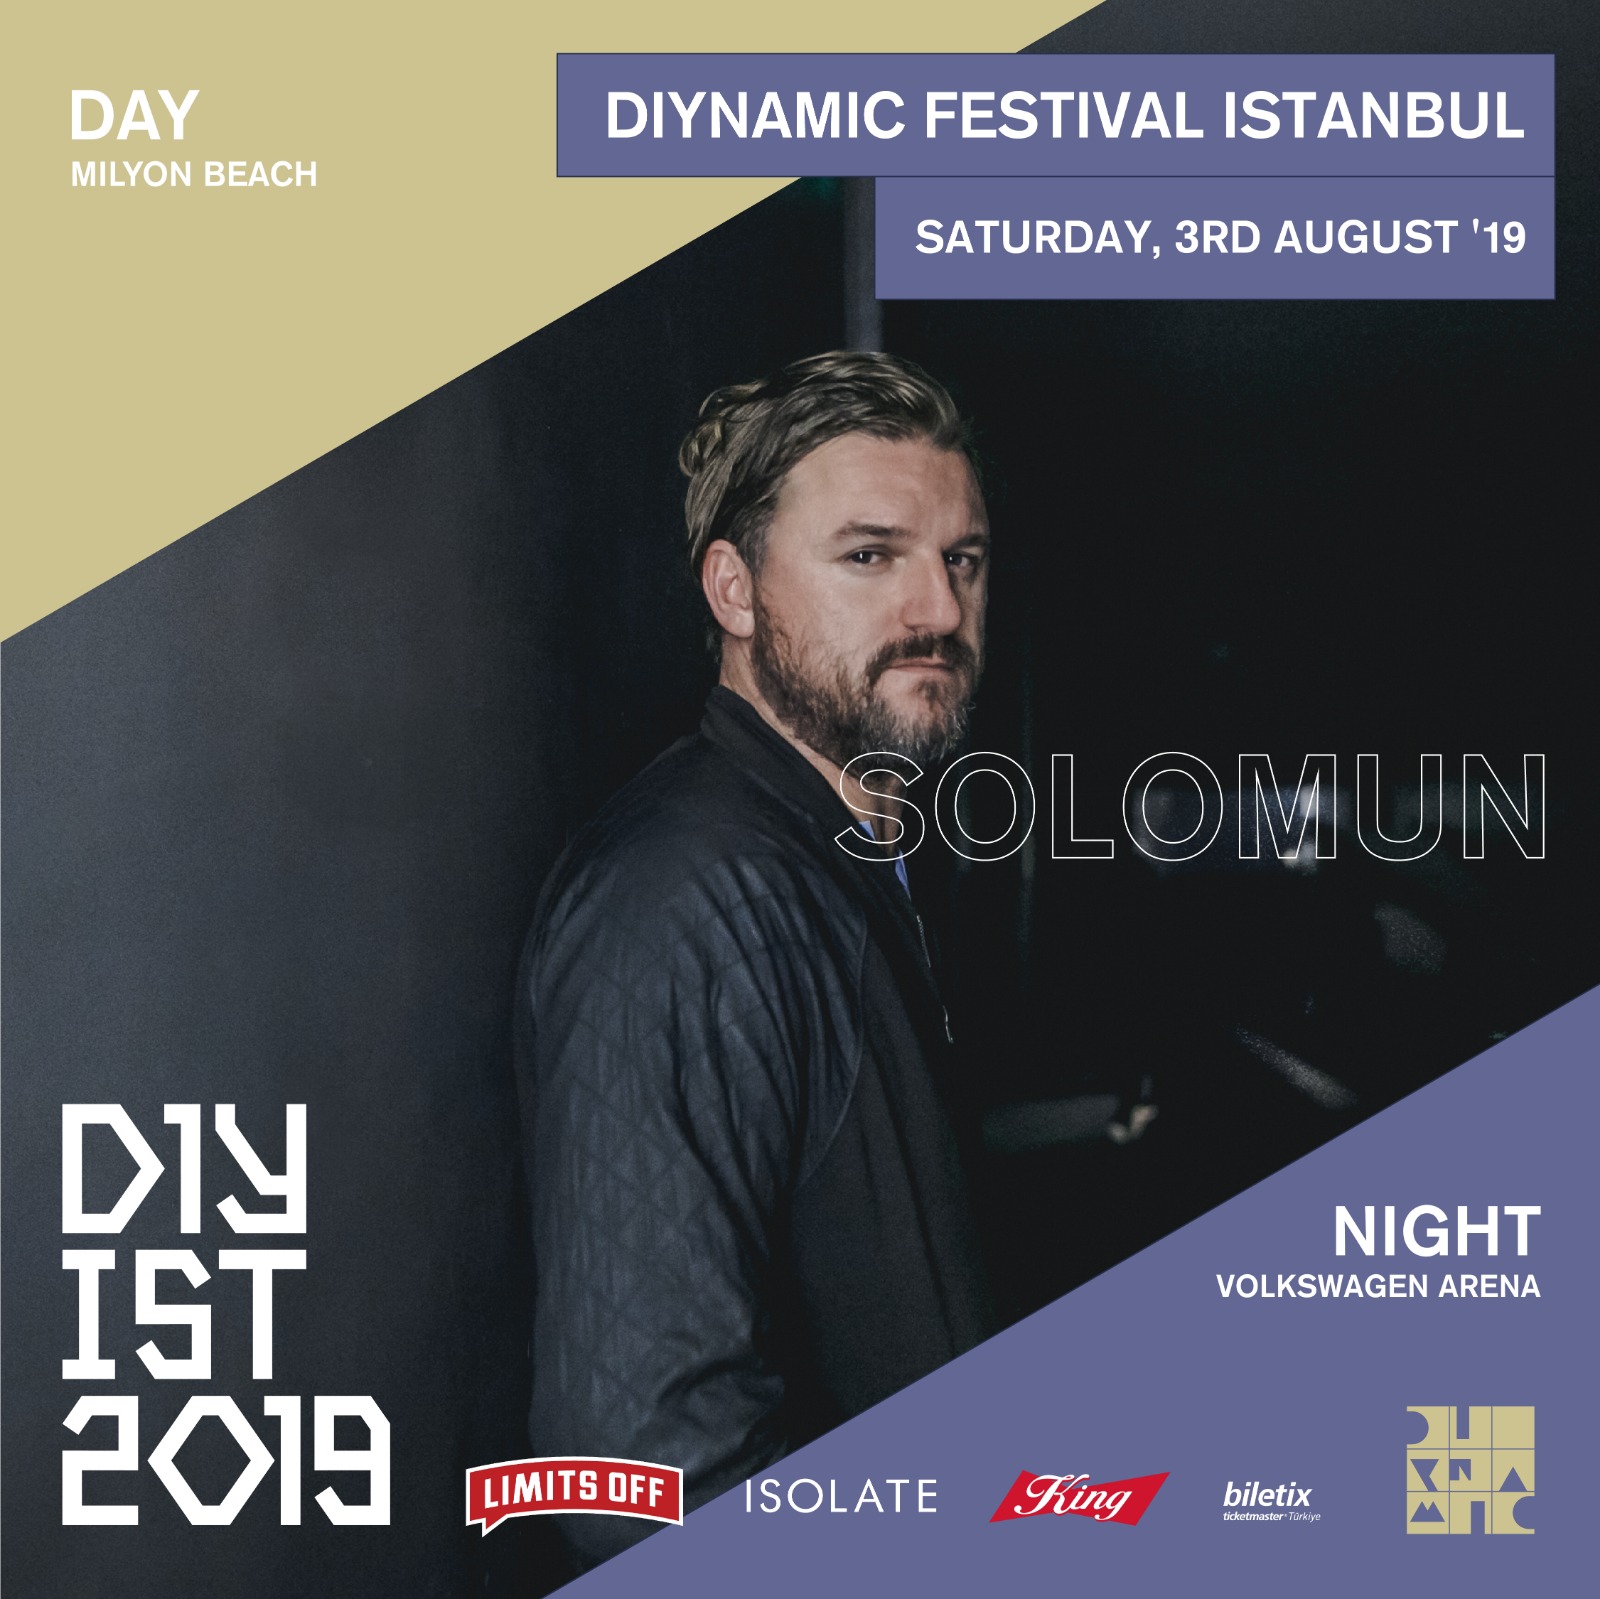 Diynamic Festival, Isolate İstanbul Organizasyonu ve Limits Off Sponsorluğunda Yeniden İstanbul’da!